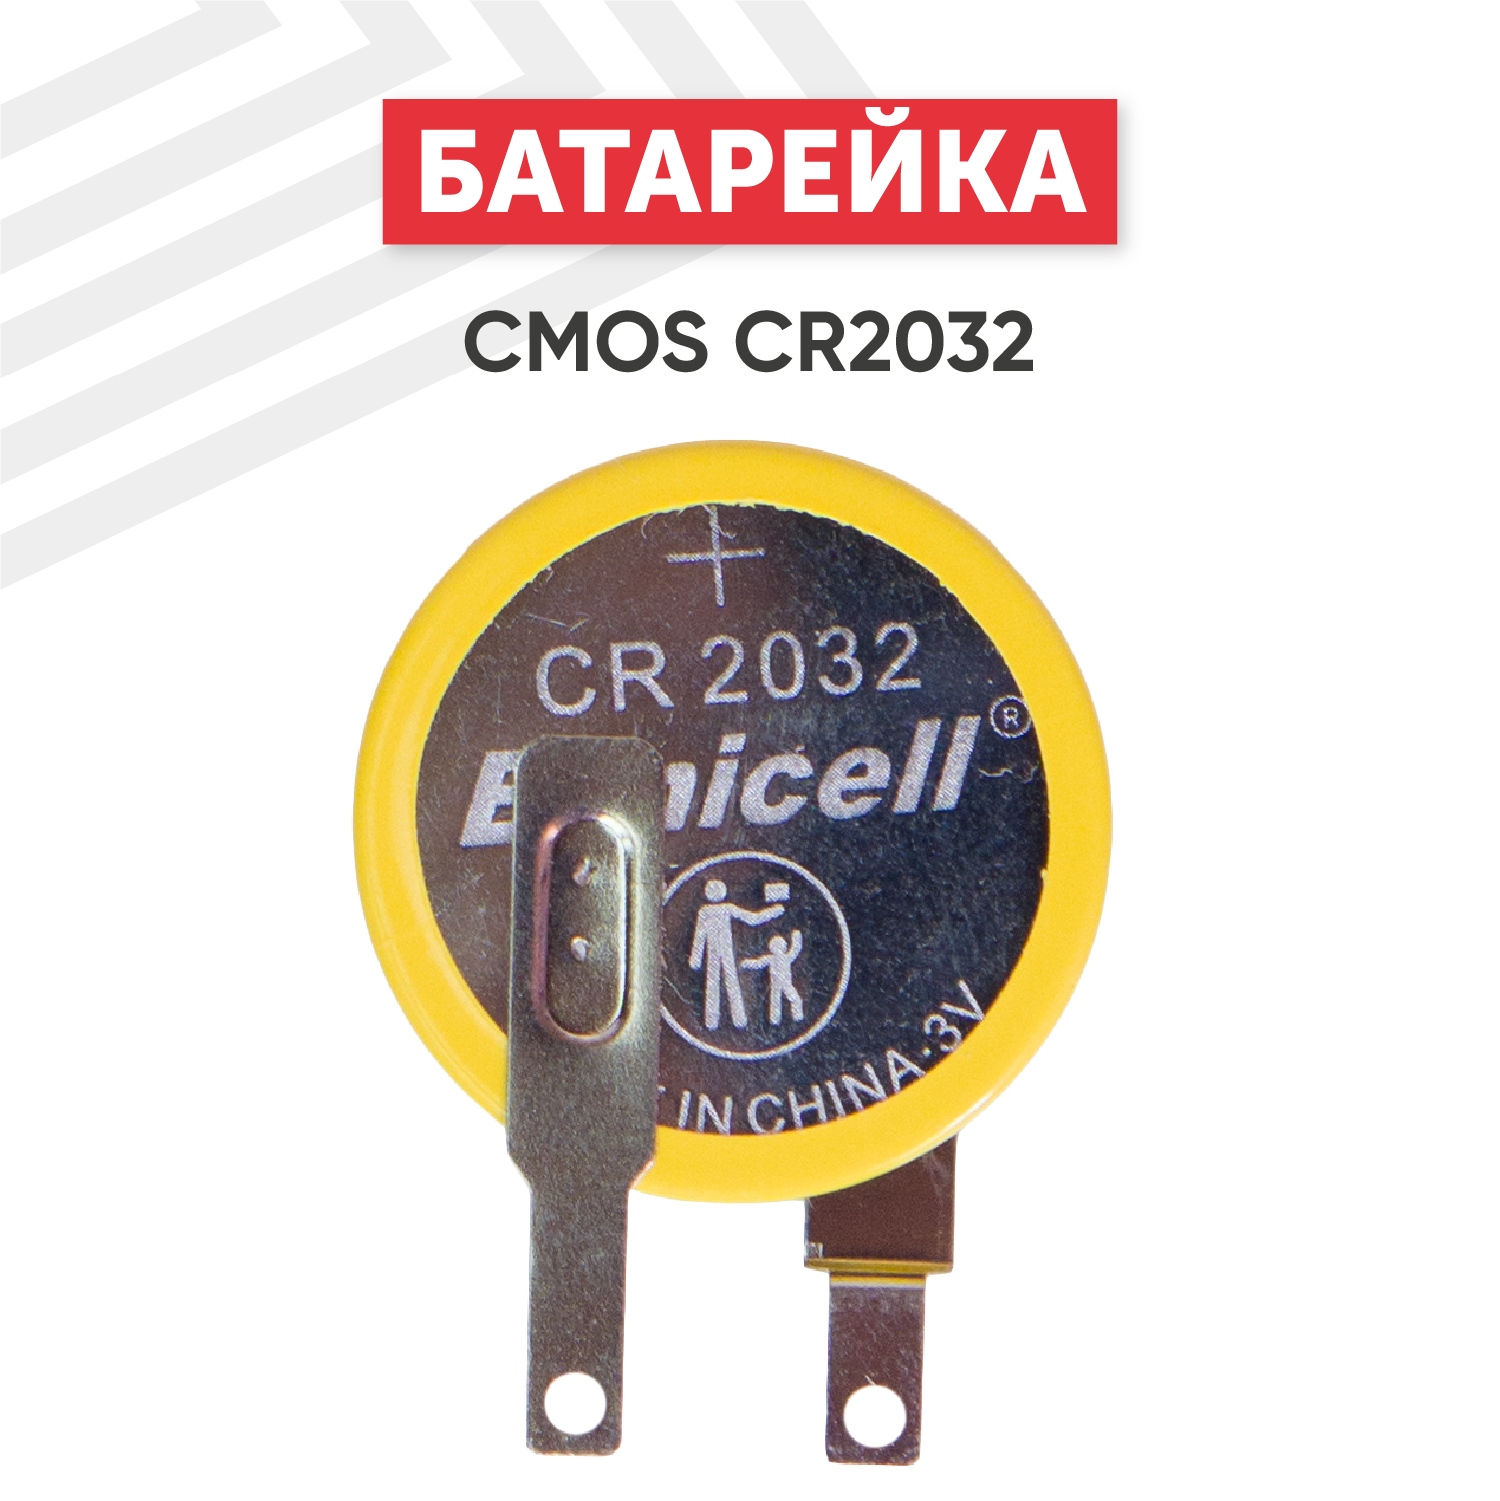 Батарейка (элемент питания, таблетка) CMOS CR2032 / CR 2032, 3В, 210мАч для часов, игрушек, сигнализации, фонарей, брелоков